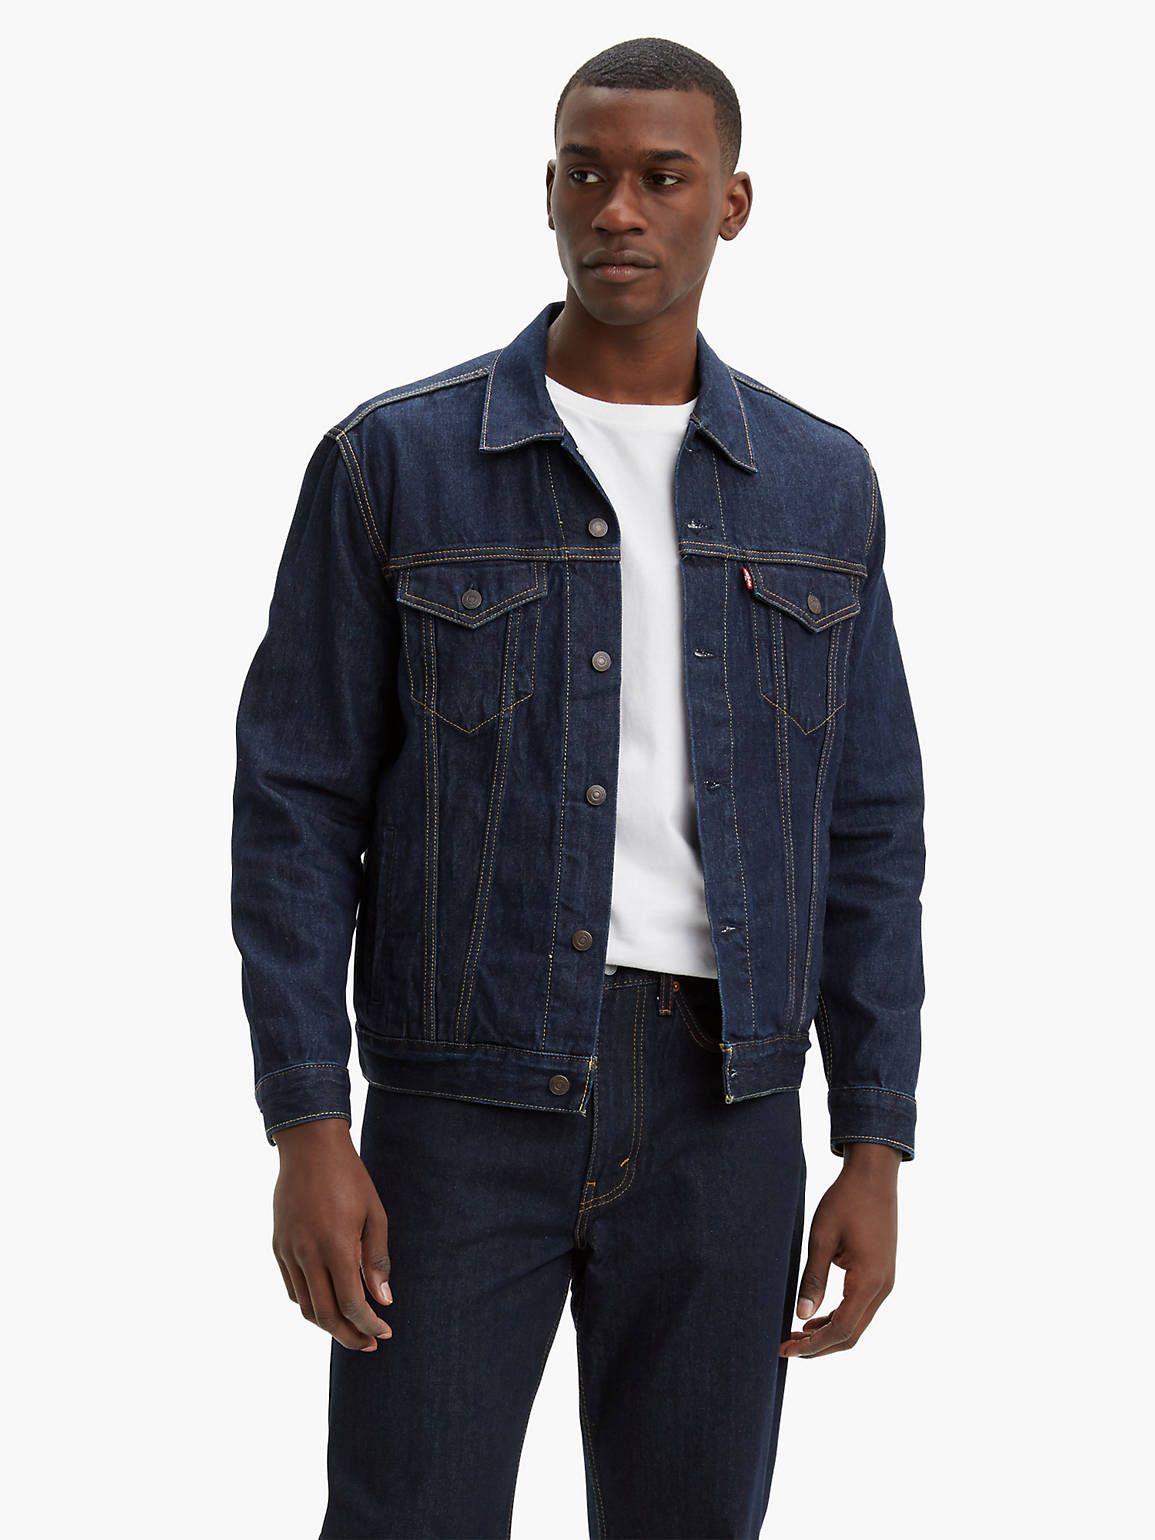 Levi's Trucker Jacket - Rinse Wash – Wear